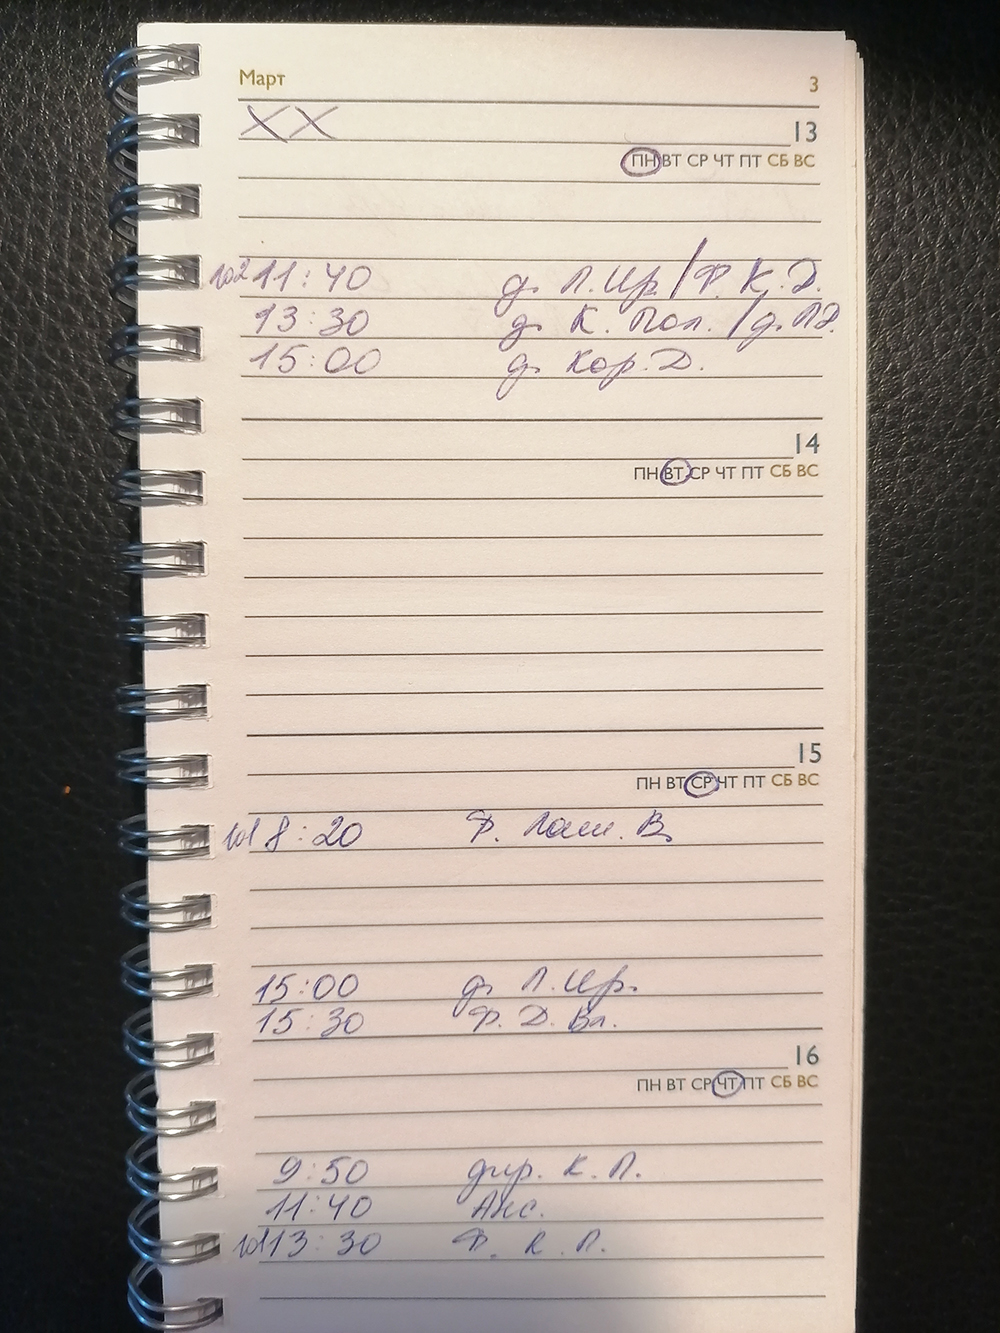 Мое расписание на неделю — как видно, вне сессии пар мало